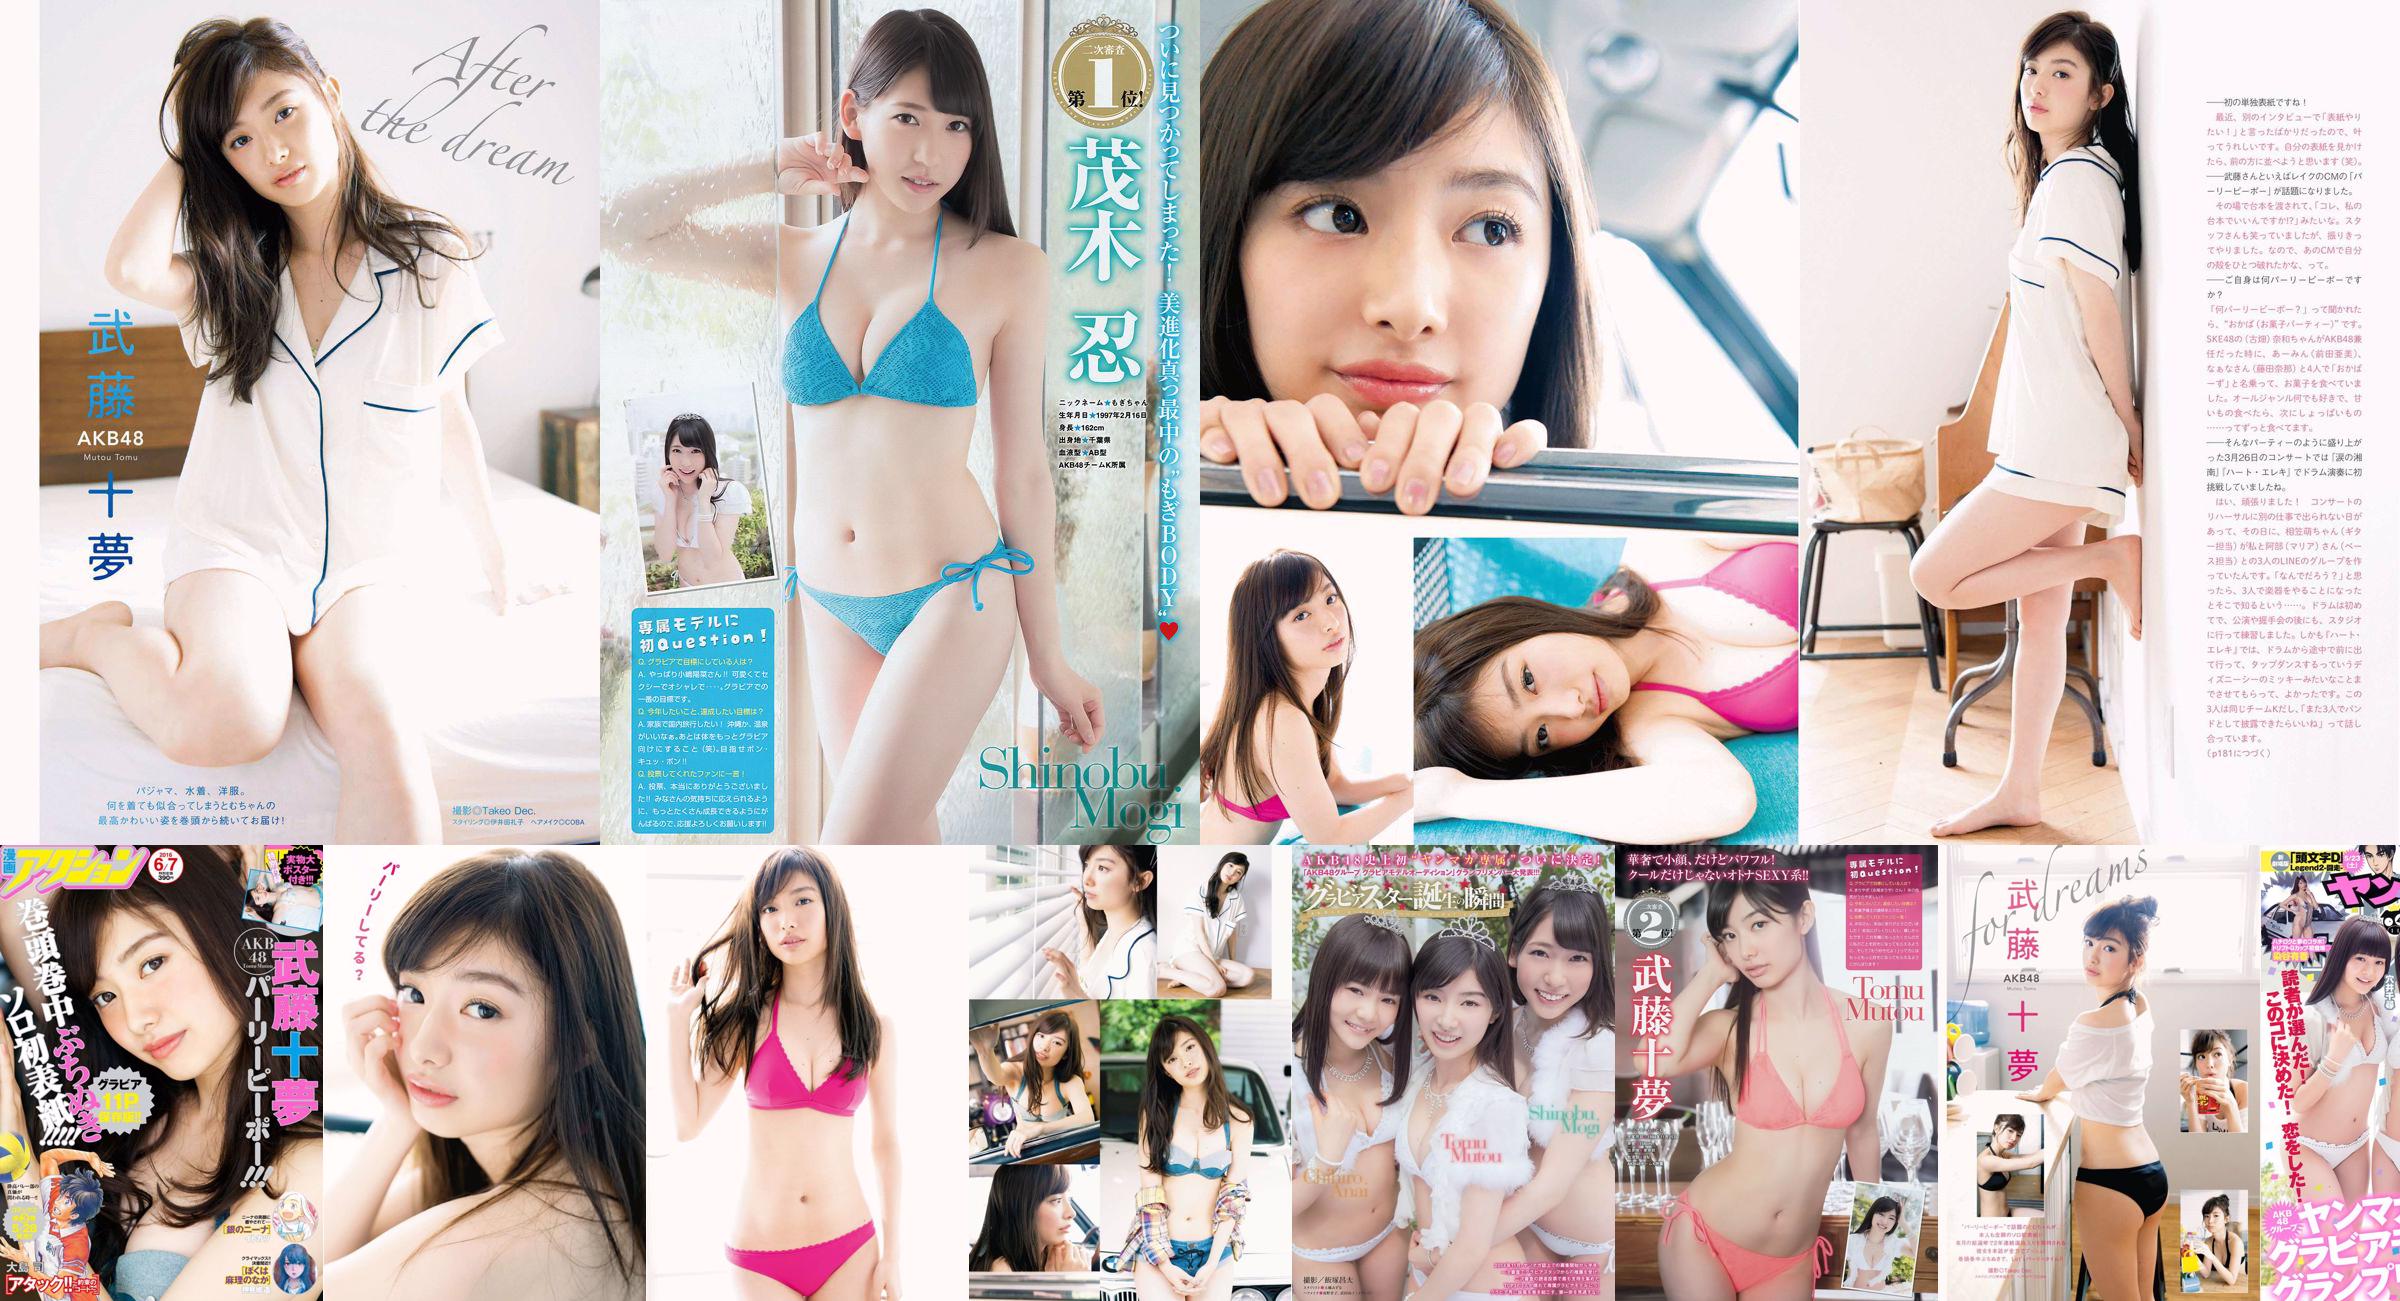 [Young Magazine] Tomu Muto Shinobu Mogi Chihiro Anai Erina Mano Yuka Someya 2015 No.25 Photograph No.f53ef6 หน้า 1